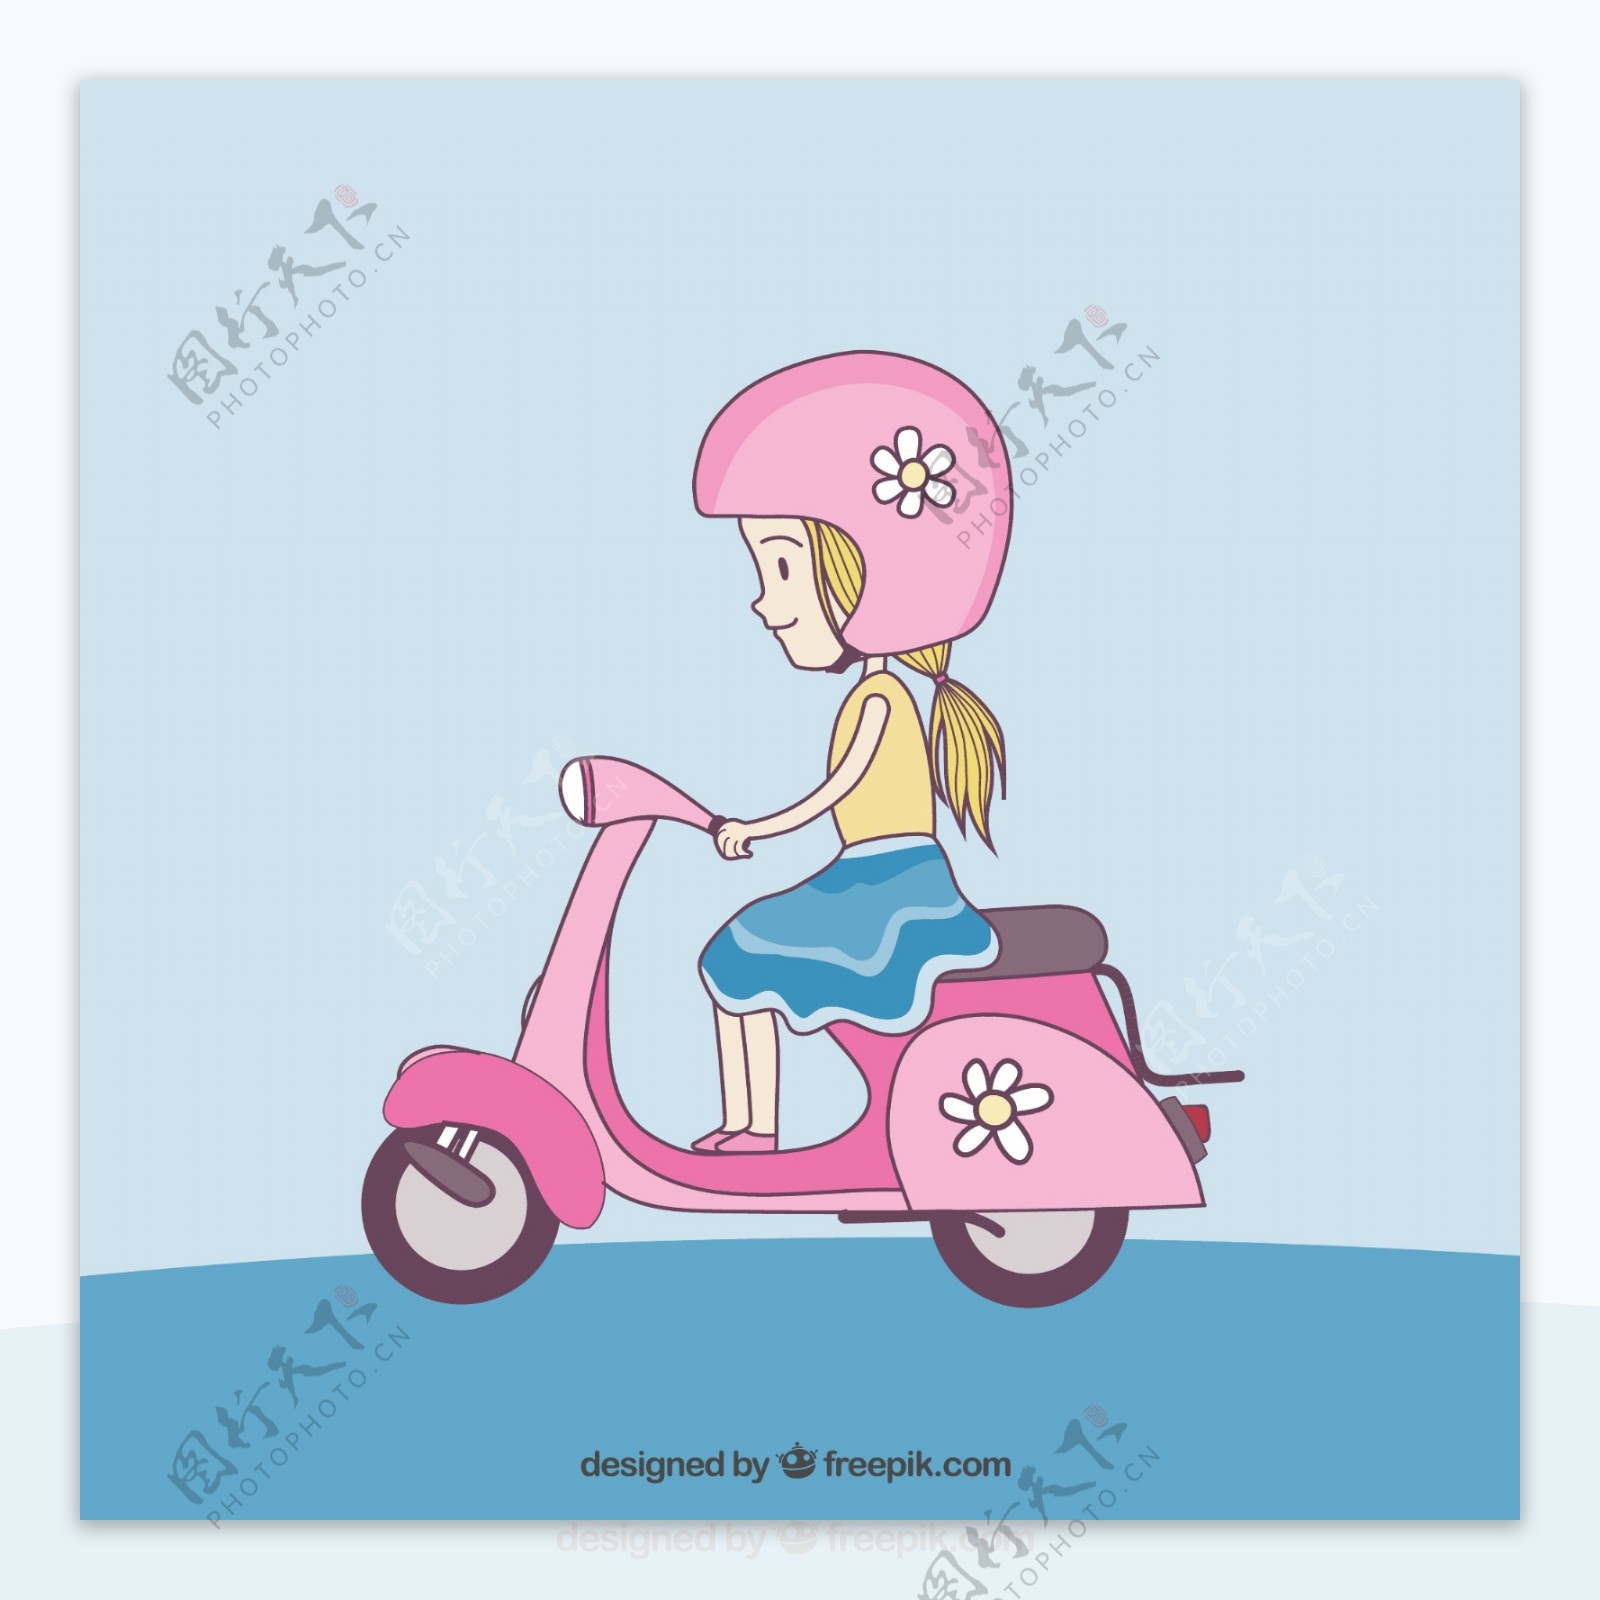 骑粉色电动车的女孩矢量图